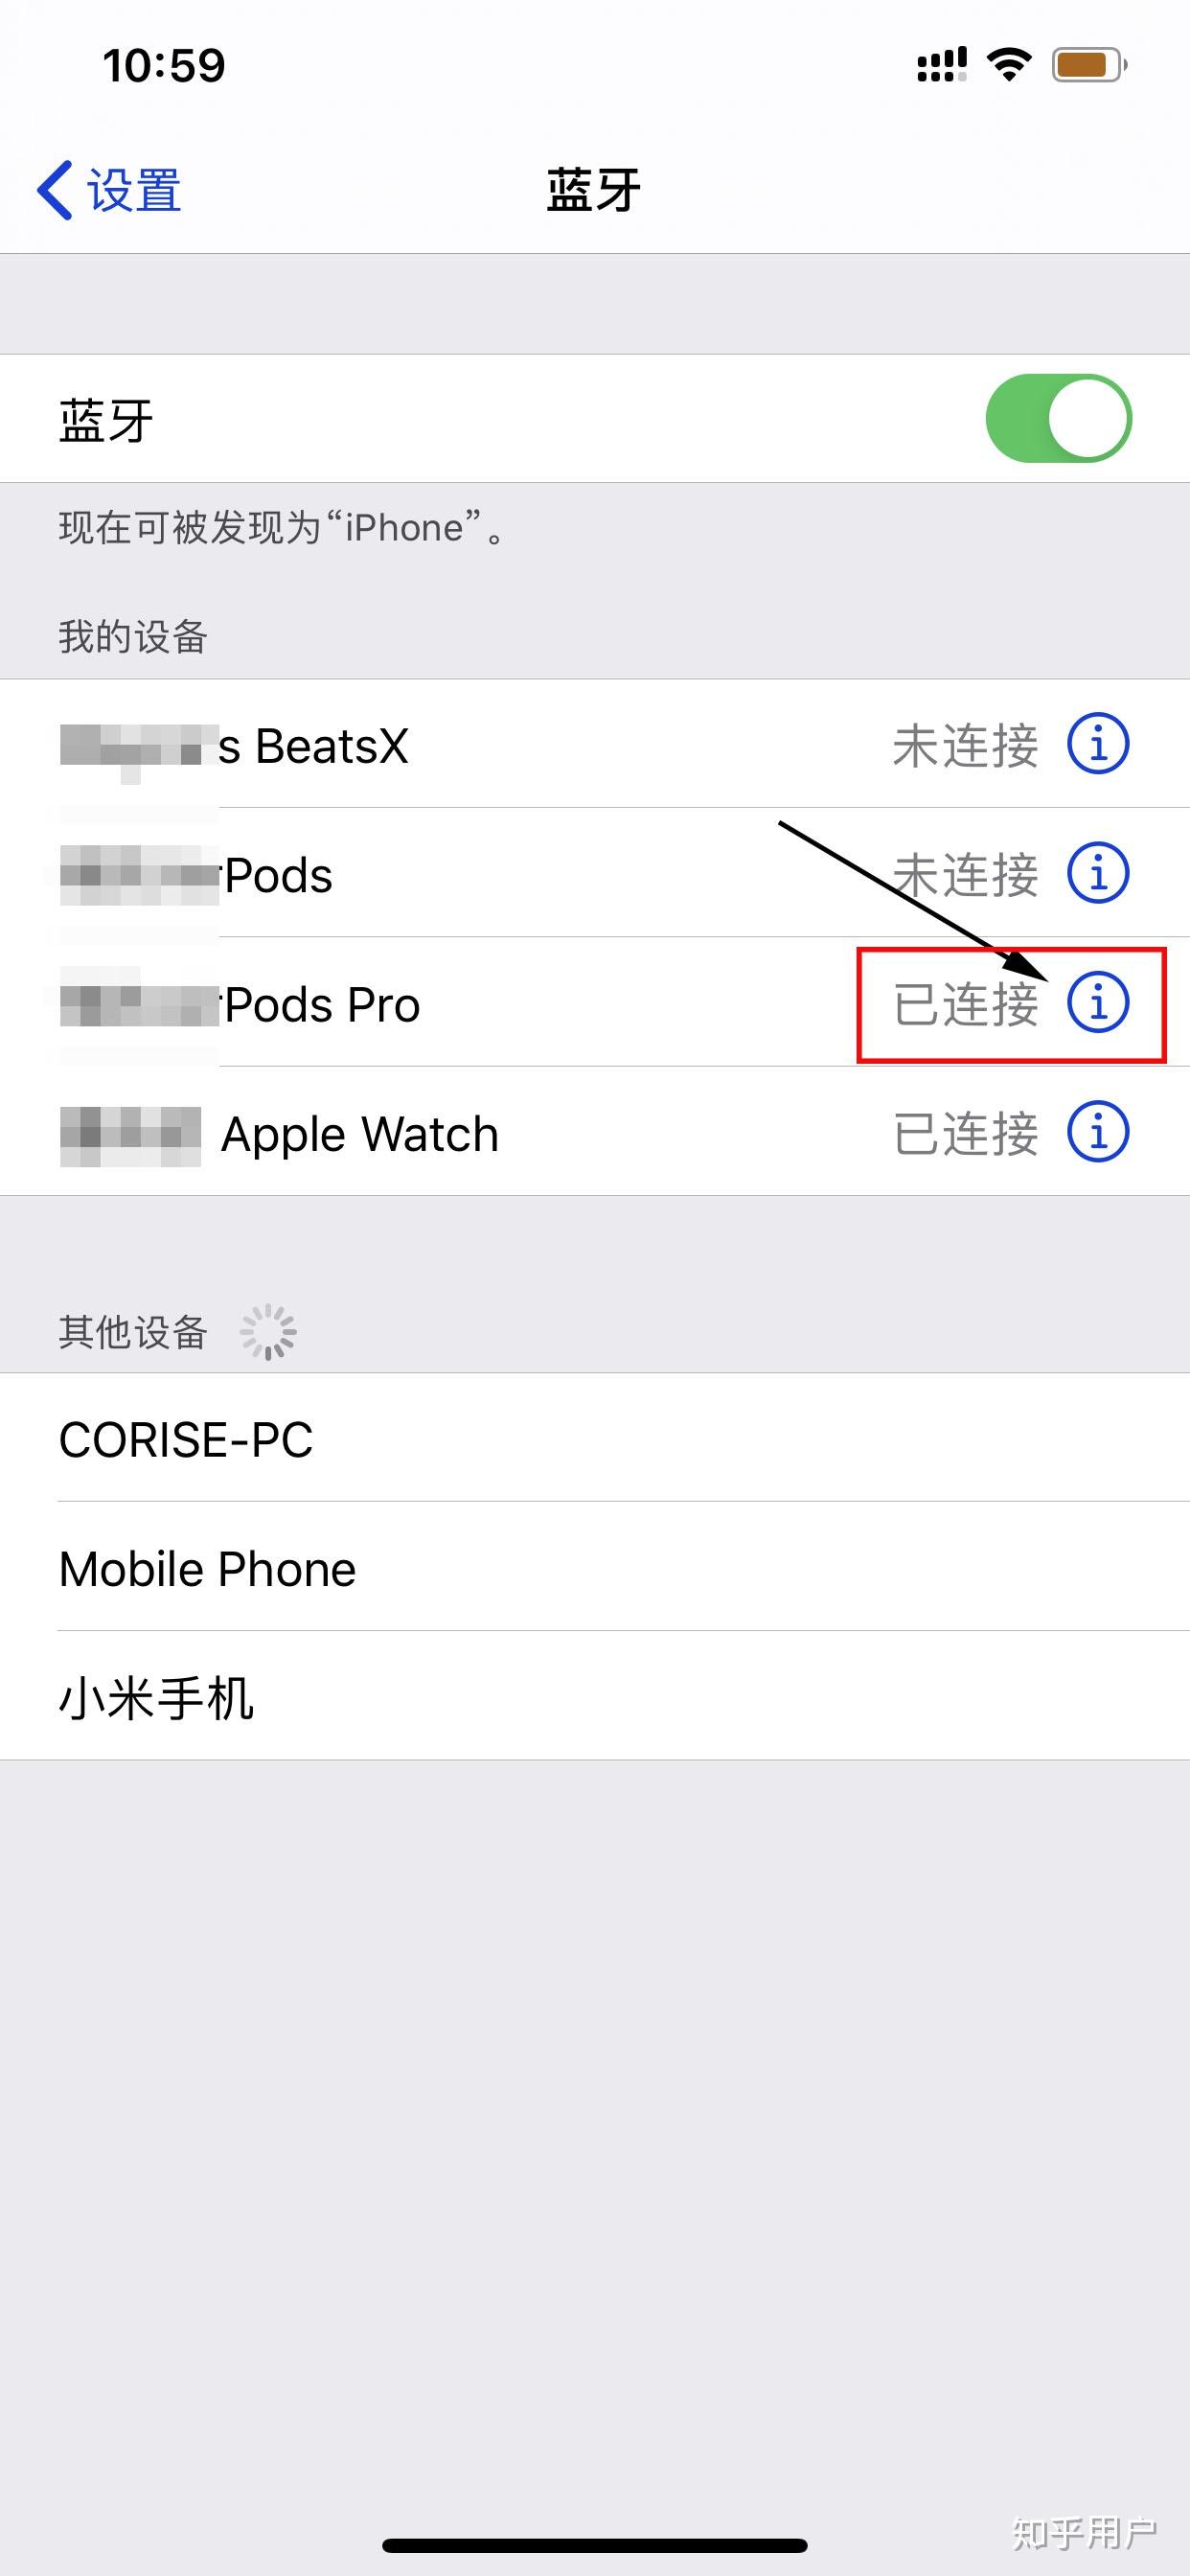 I90 苹果U盘 - 闪存U盘 - 深圳市忆捷创新科技有限公司